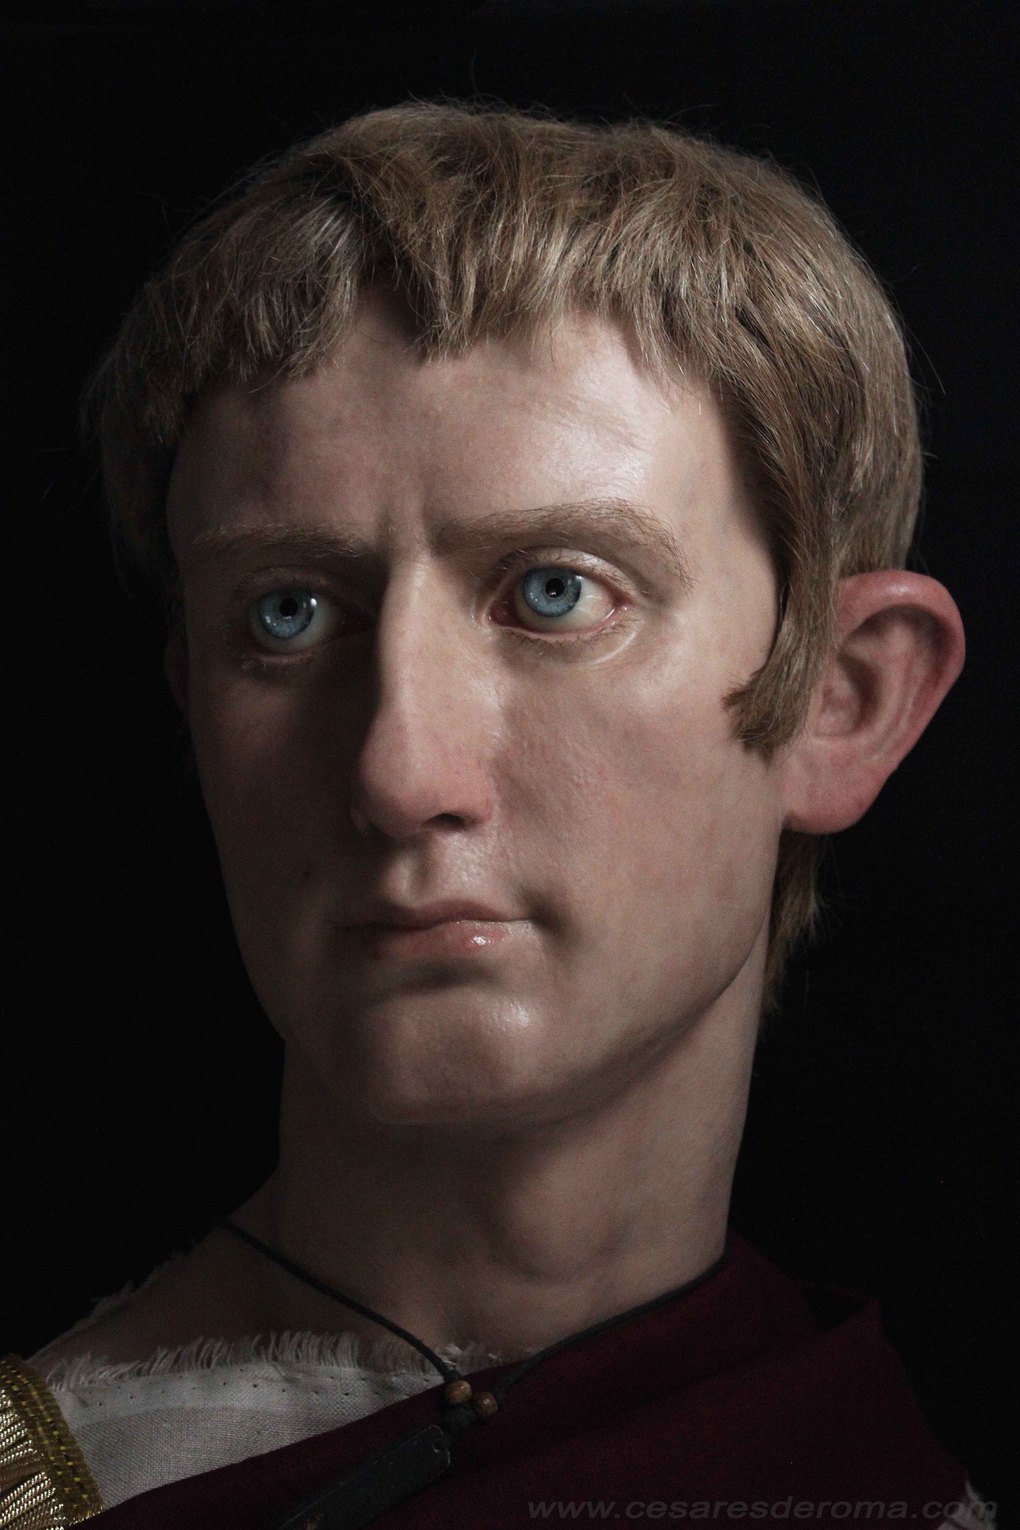 Итальянский скульптор создаёт реалистичные бюсты римских императоров. Нерона люди не оценили 72